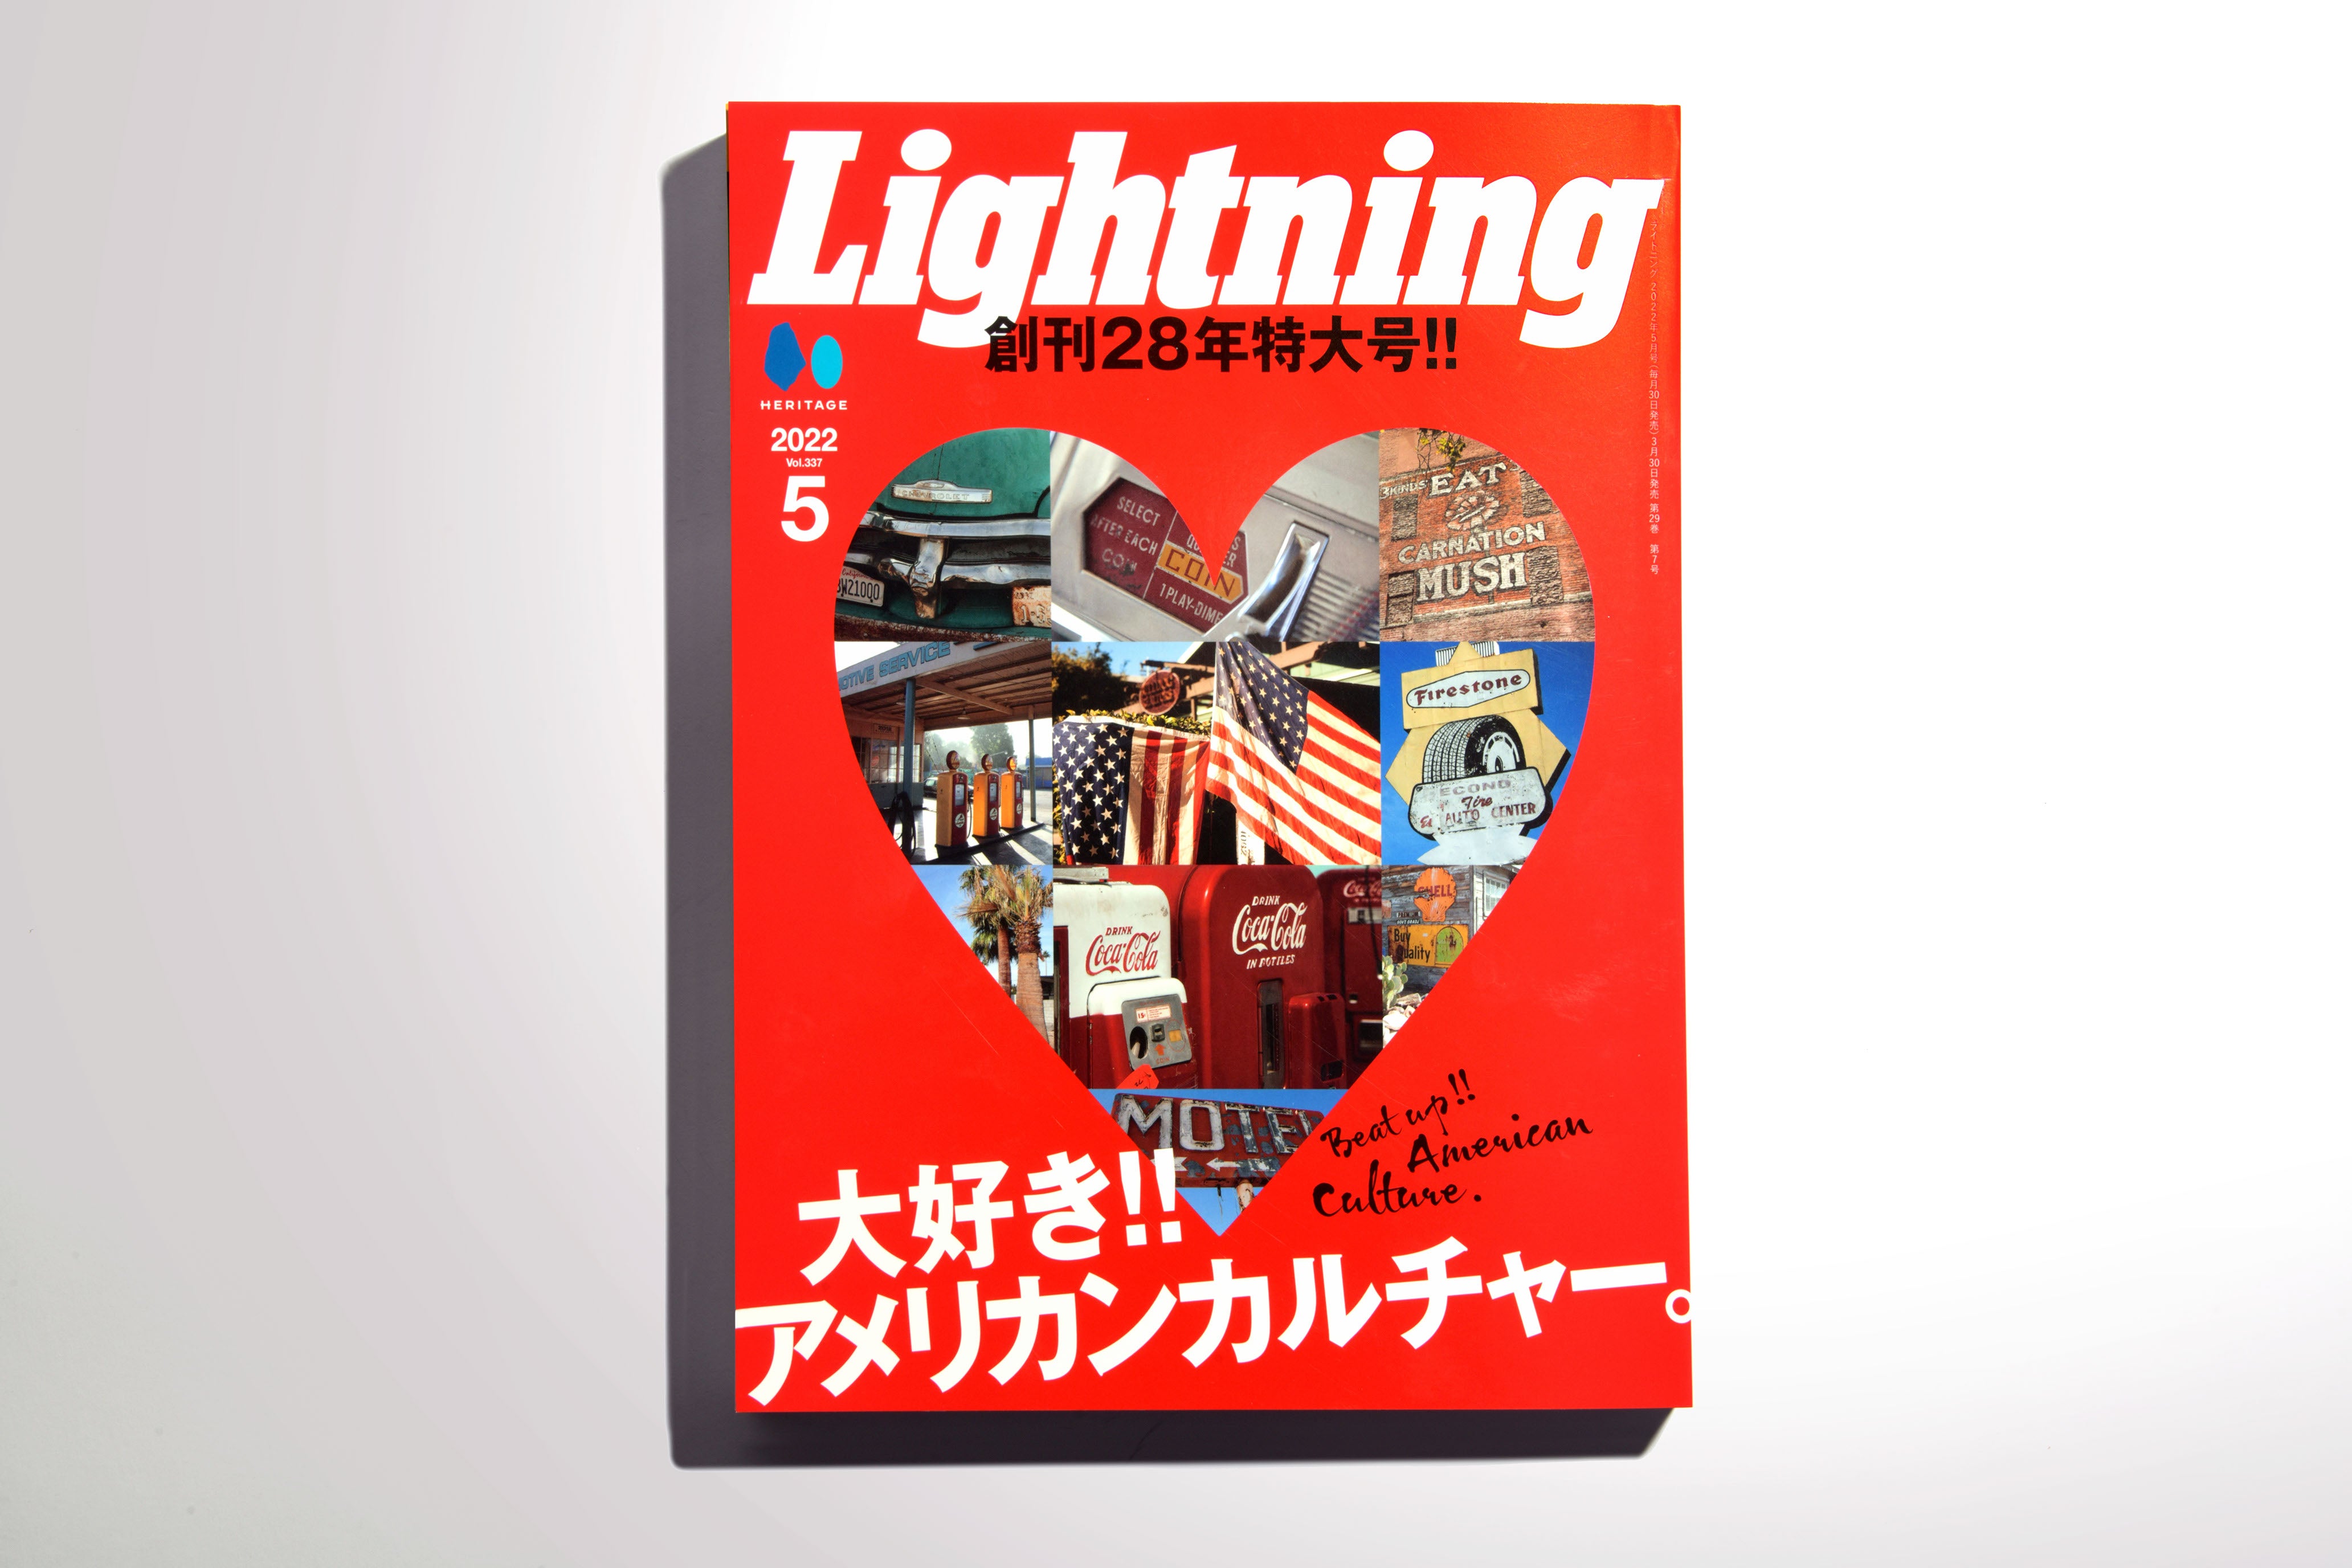 Lightning 雑誌セット　アメリカン